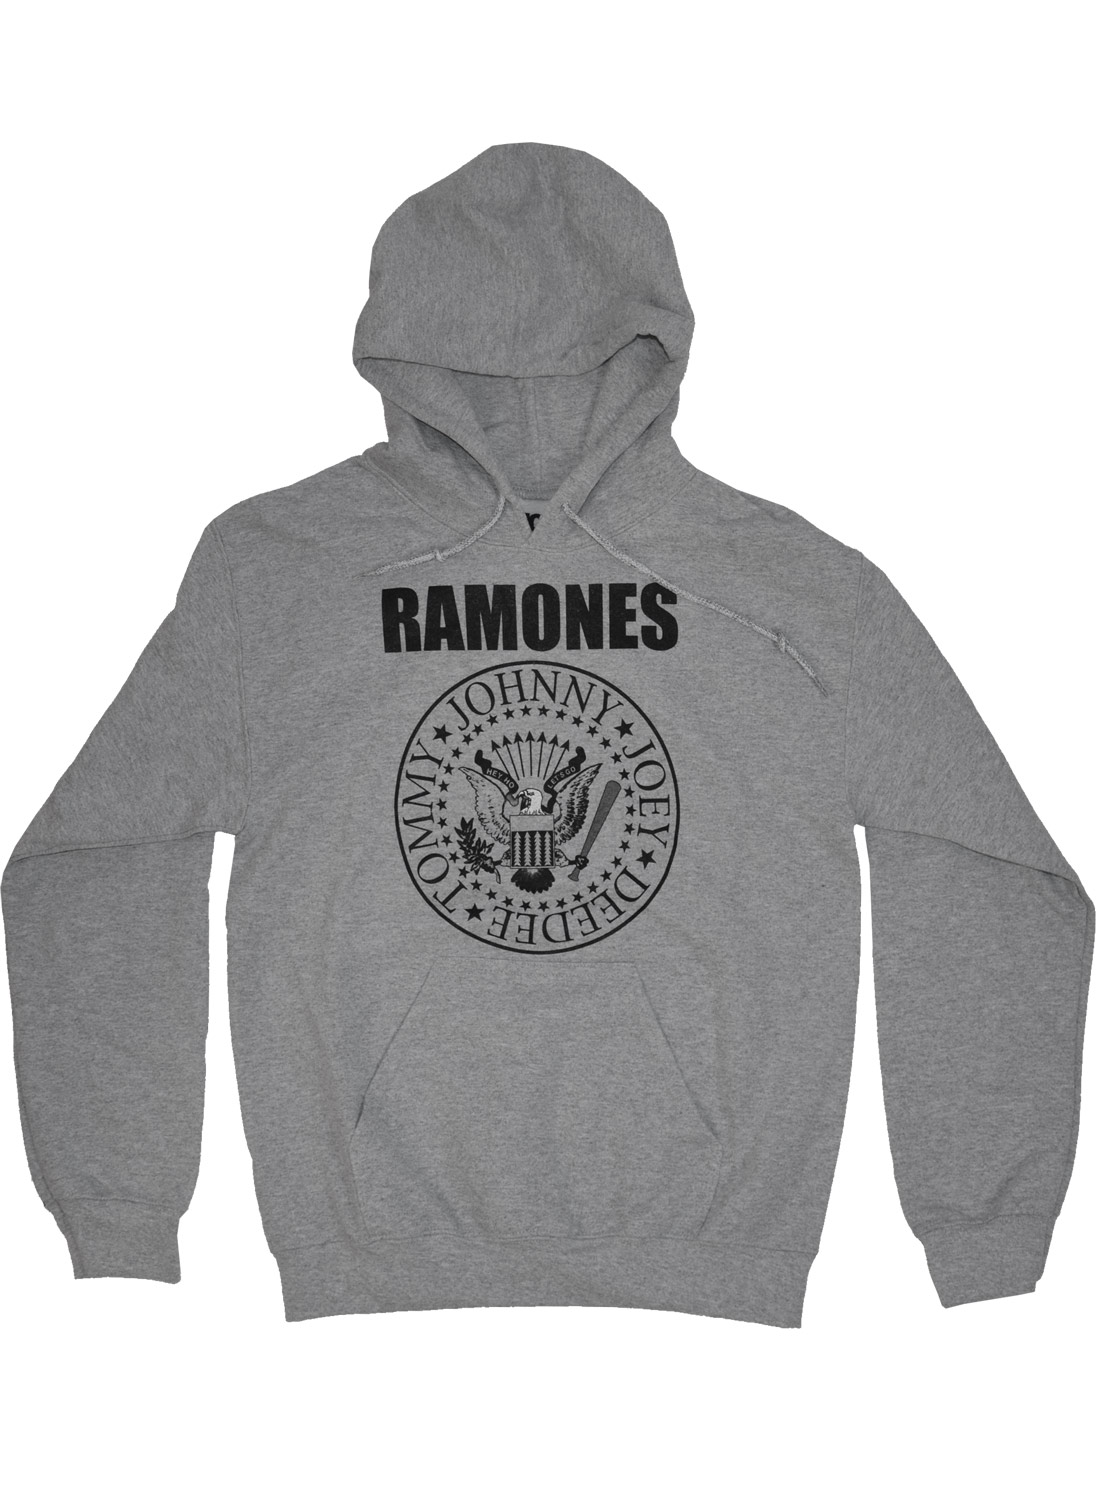 Ramones Presidential Seal Hoodie